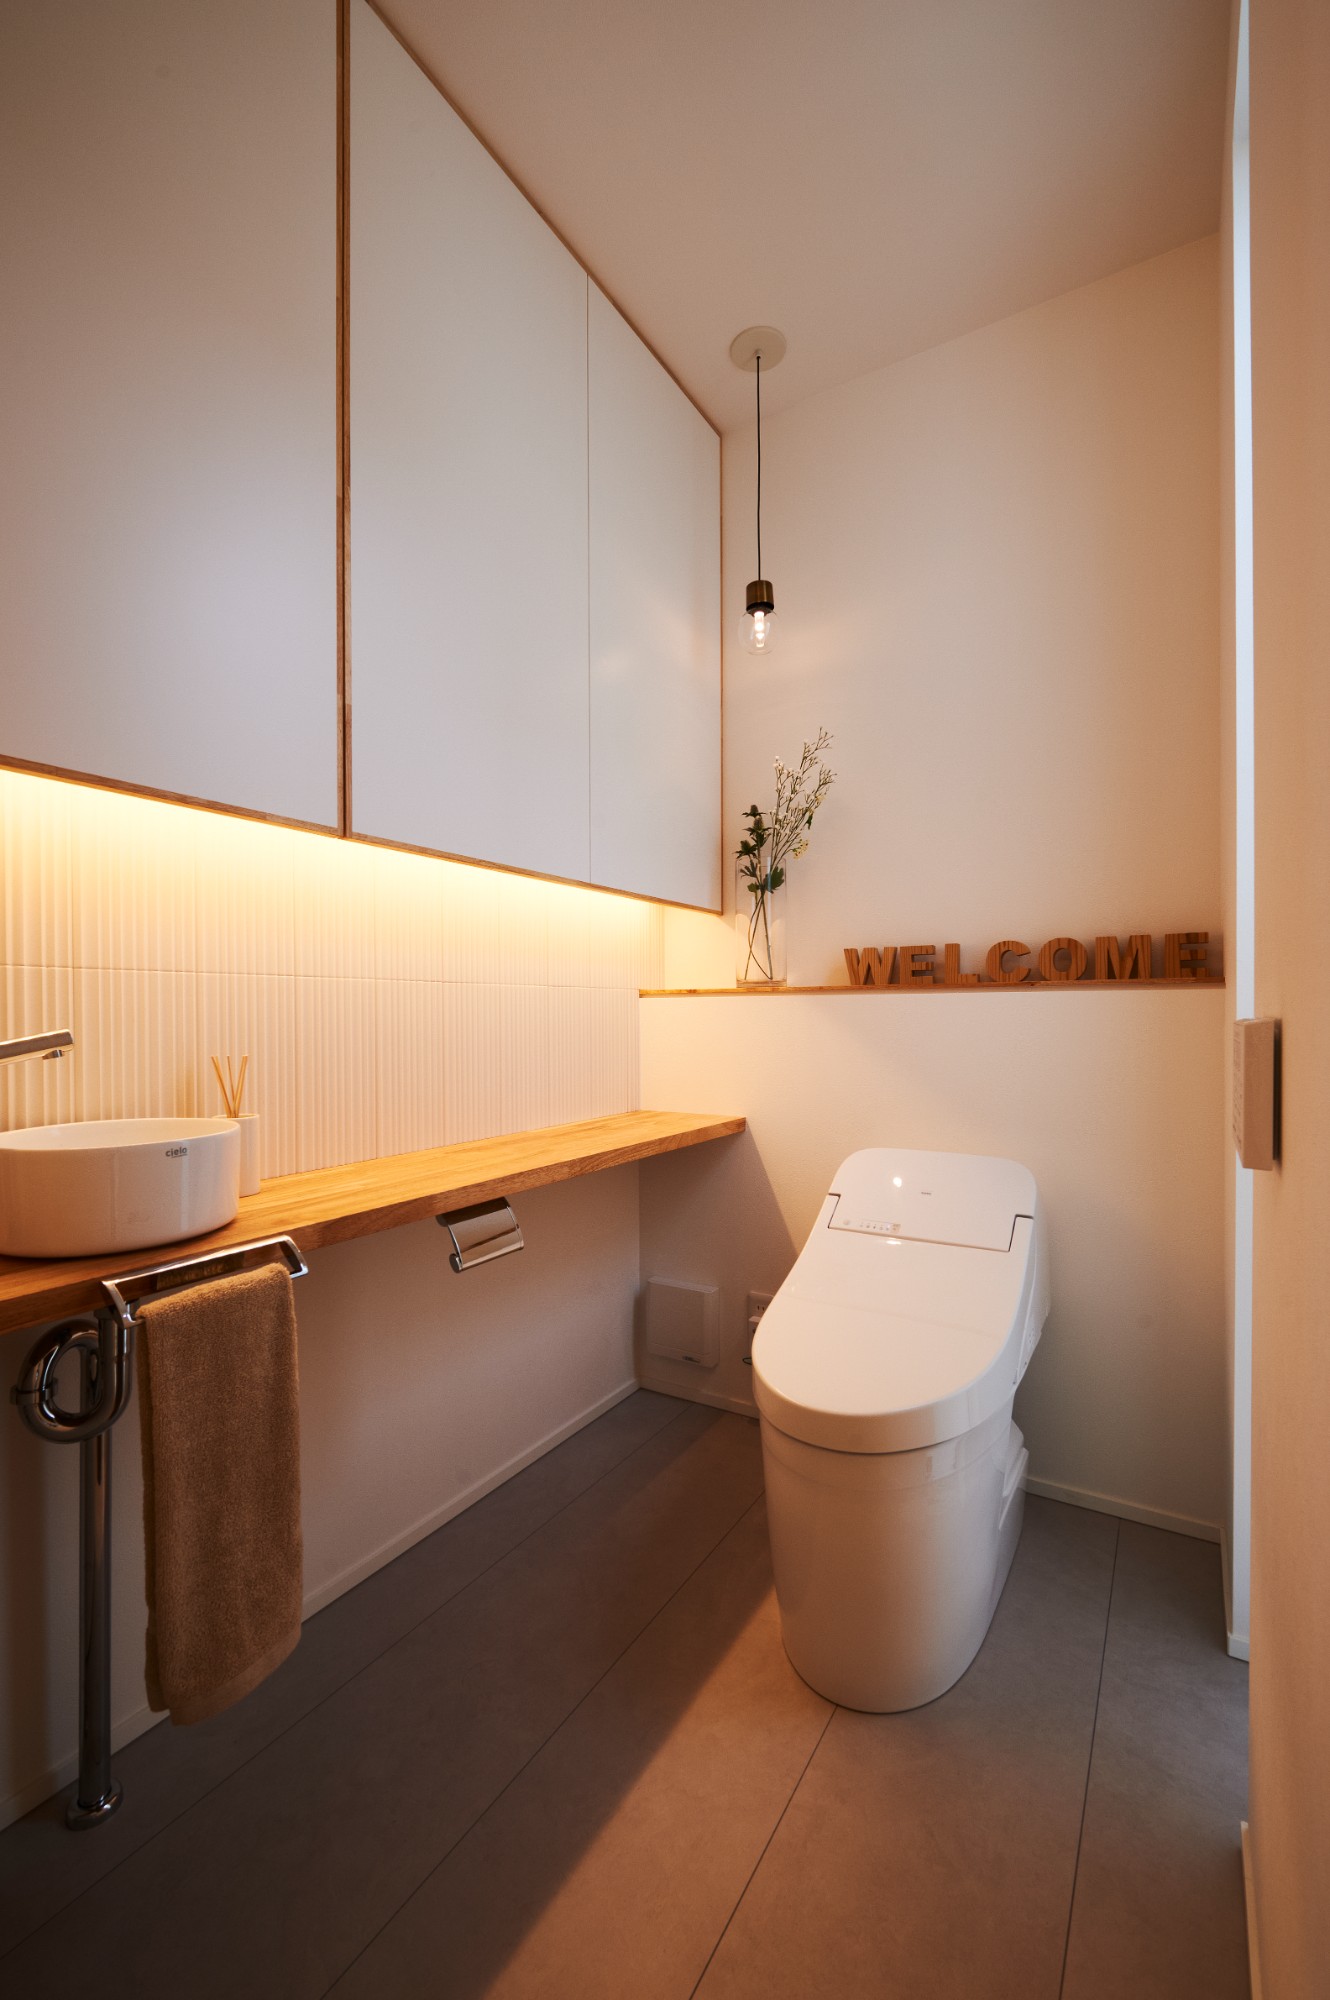 【平屋+ロフト】内と外を融合させた空間設計で叶う新しい生活スタイルのトイレ写真